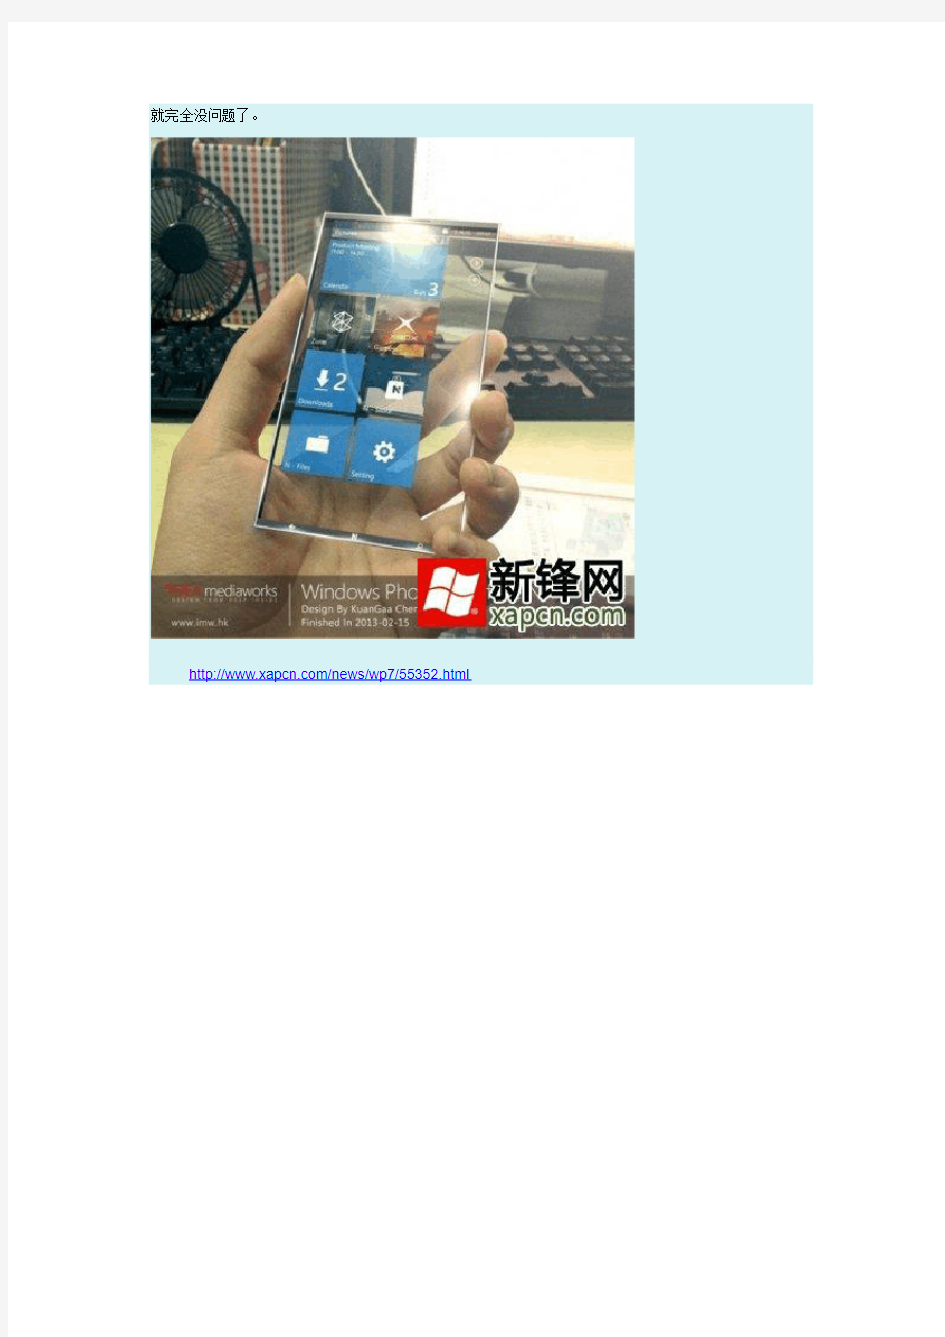 全透明的WP手机 Surface N